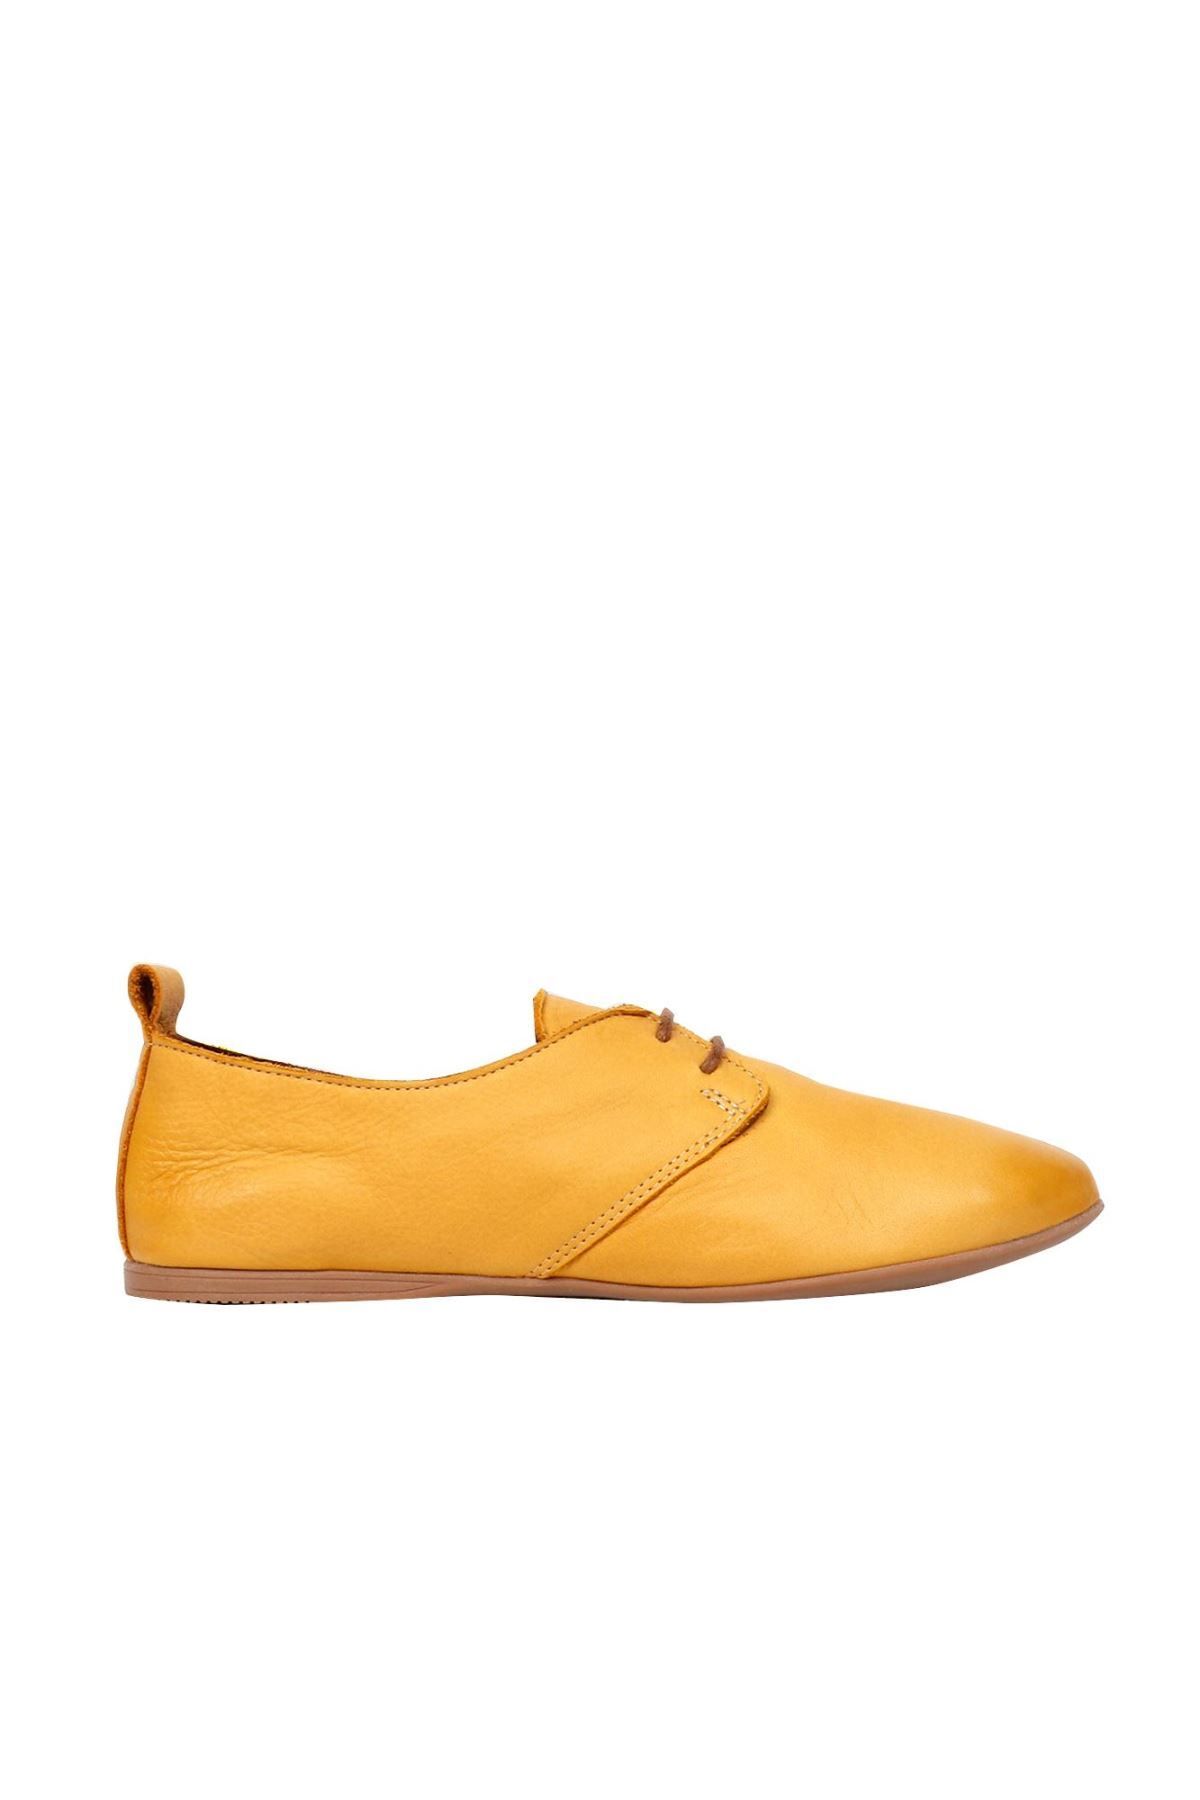 BUENO Shoes Sarı Deri Kadın Günlük Ayakkabı